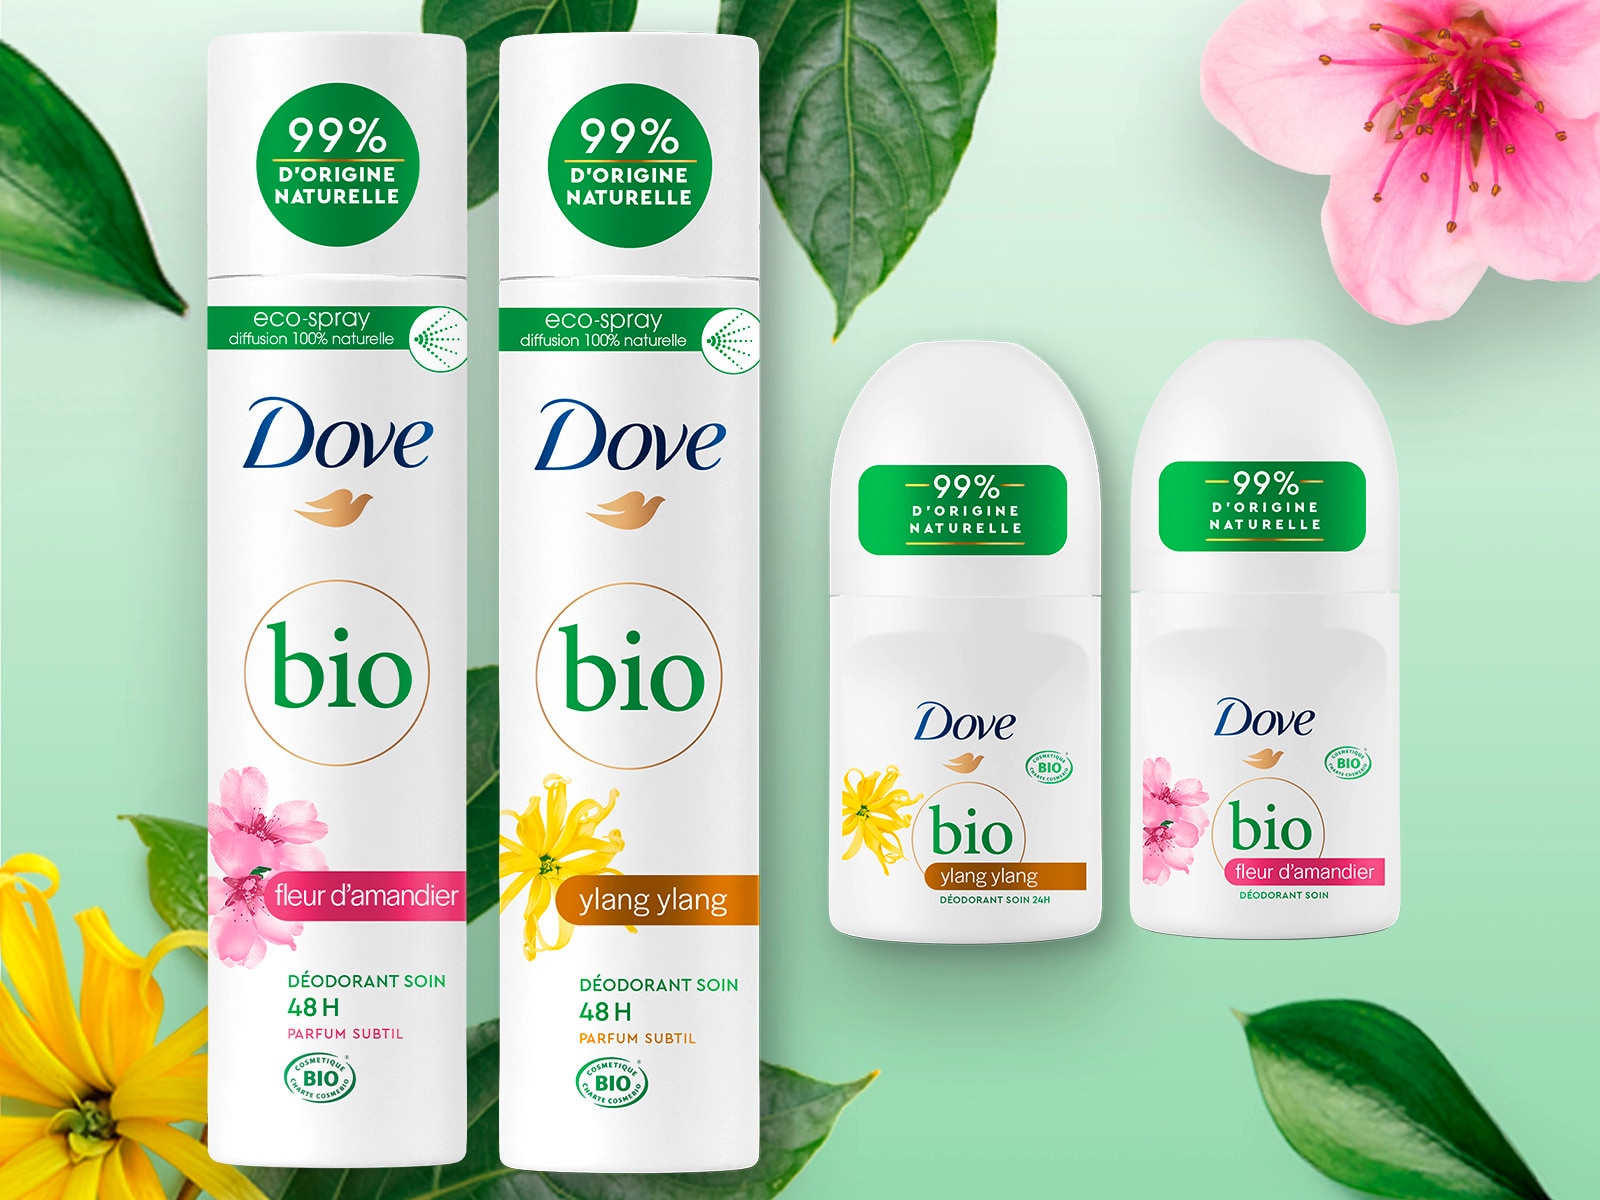 L’expertise déodorant soin Dove, maintenant certifiée Bio Text